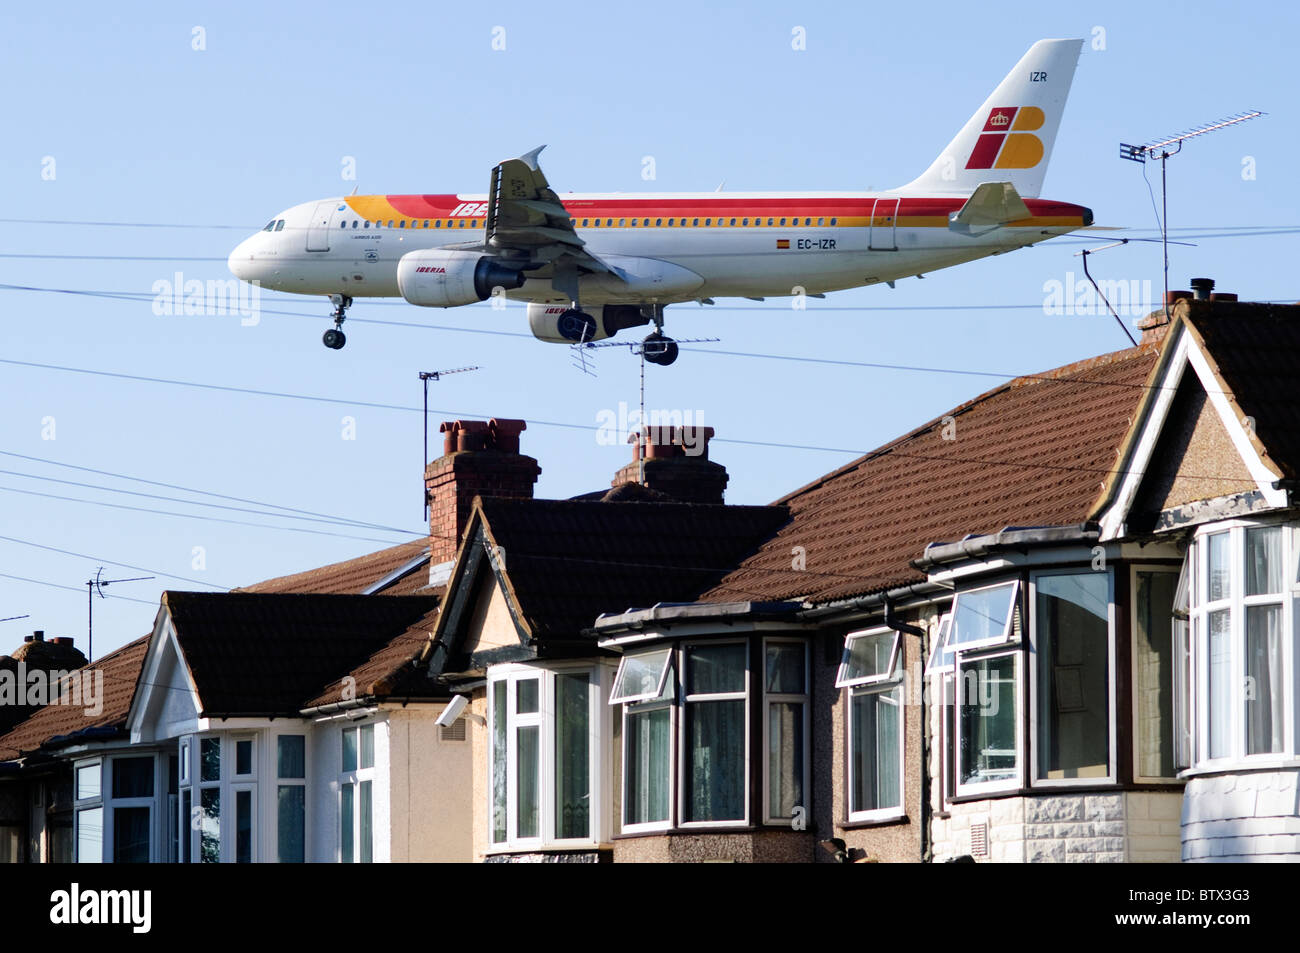 Iberia Airbus A320 nähert sich Heathrow runway niedrig über Bedfont Häuser und Dächer, London Heathrow Flughafen, Großbritannien. Stockfoto